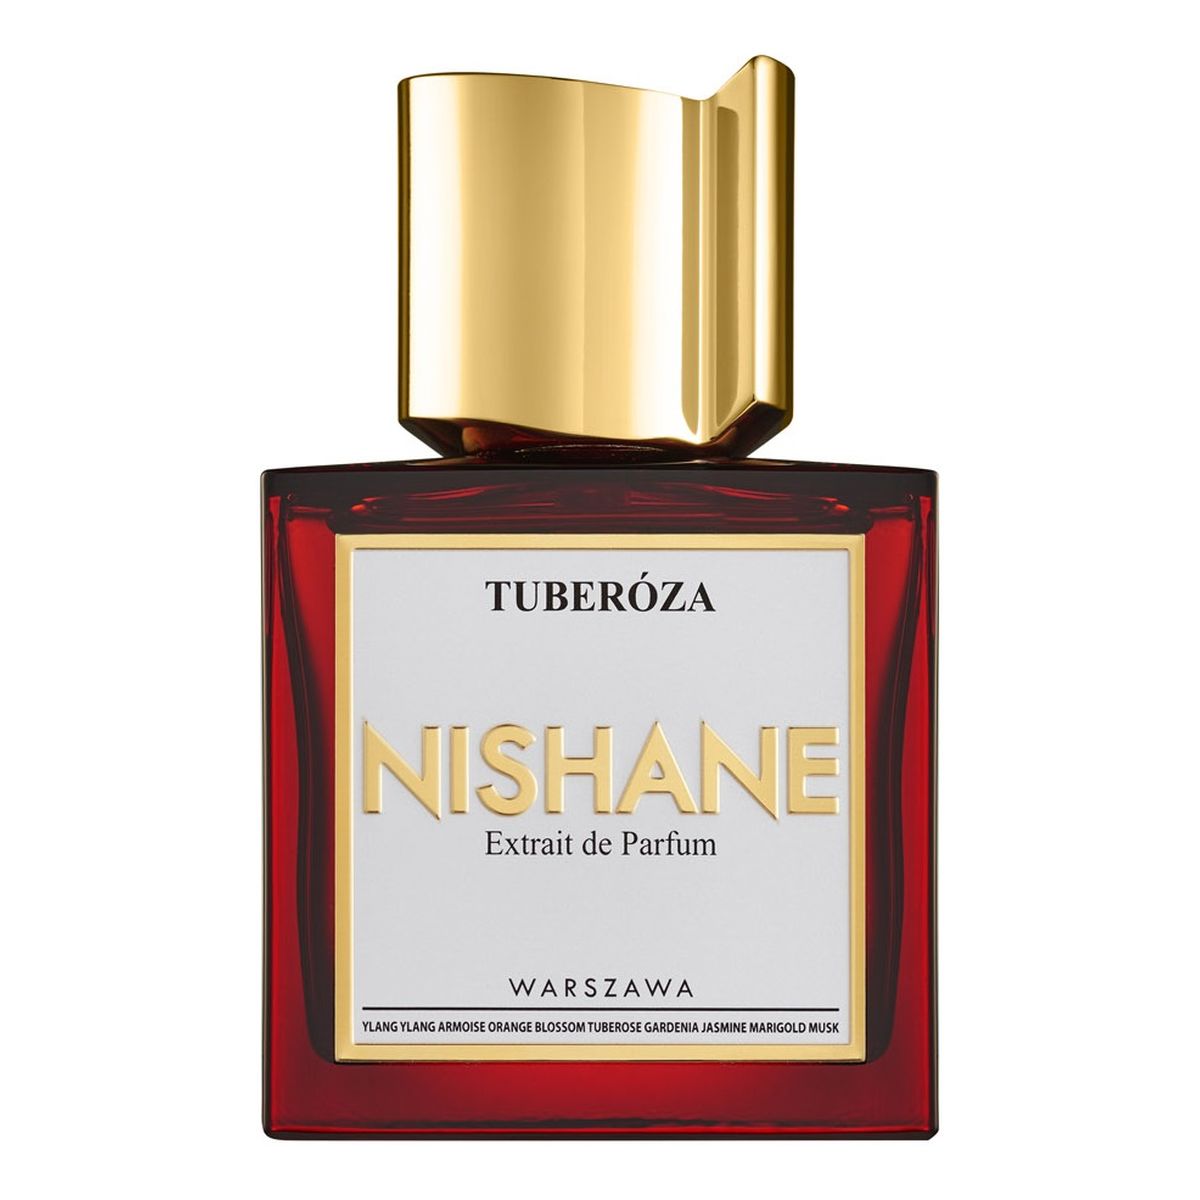 Nishane Tuberóza ekstrakt perfum spray 50ml